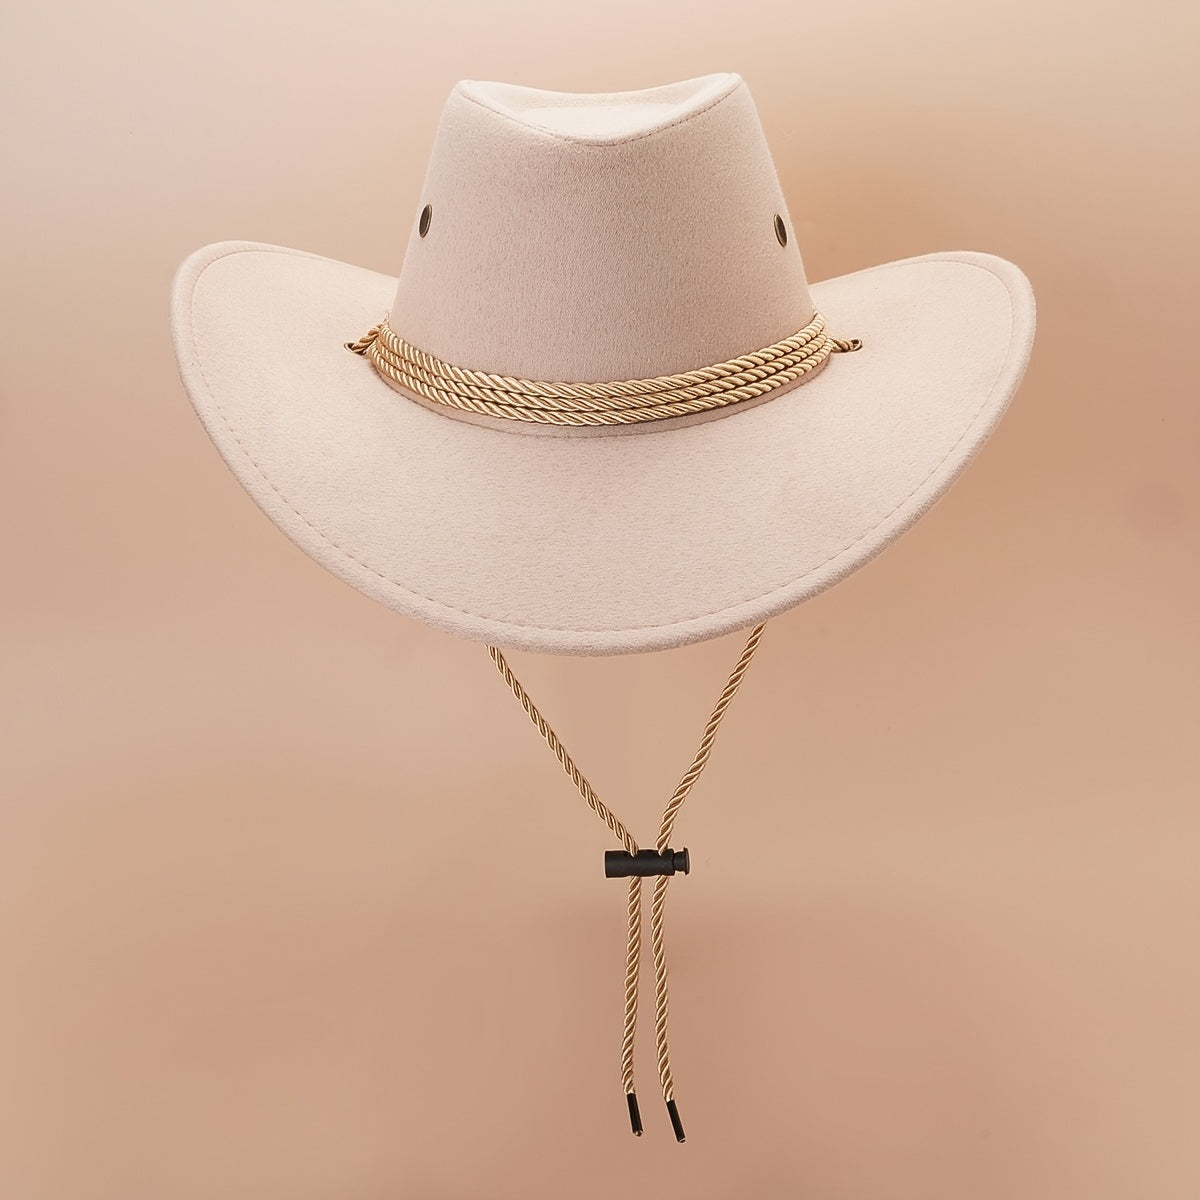 Western Cowboy Hat Vintage Jazz Hat Outdoor Fishing Cowgirl Sun Hat Wide Brim Summer Sunscreen Travel Beach Hat